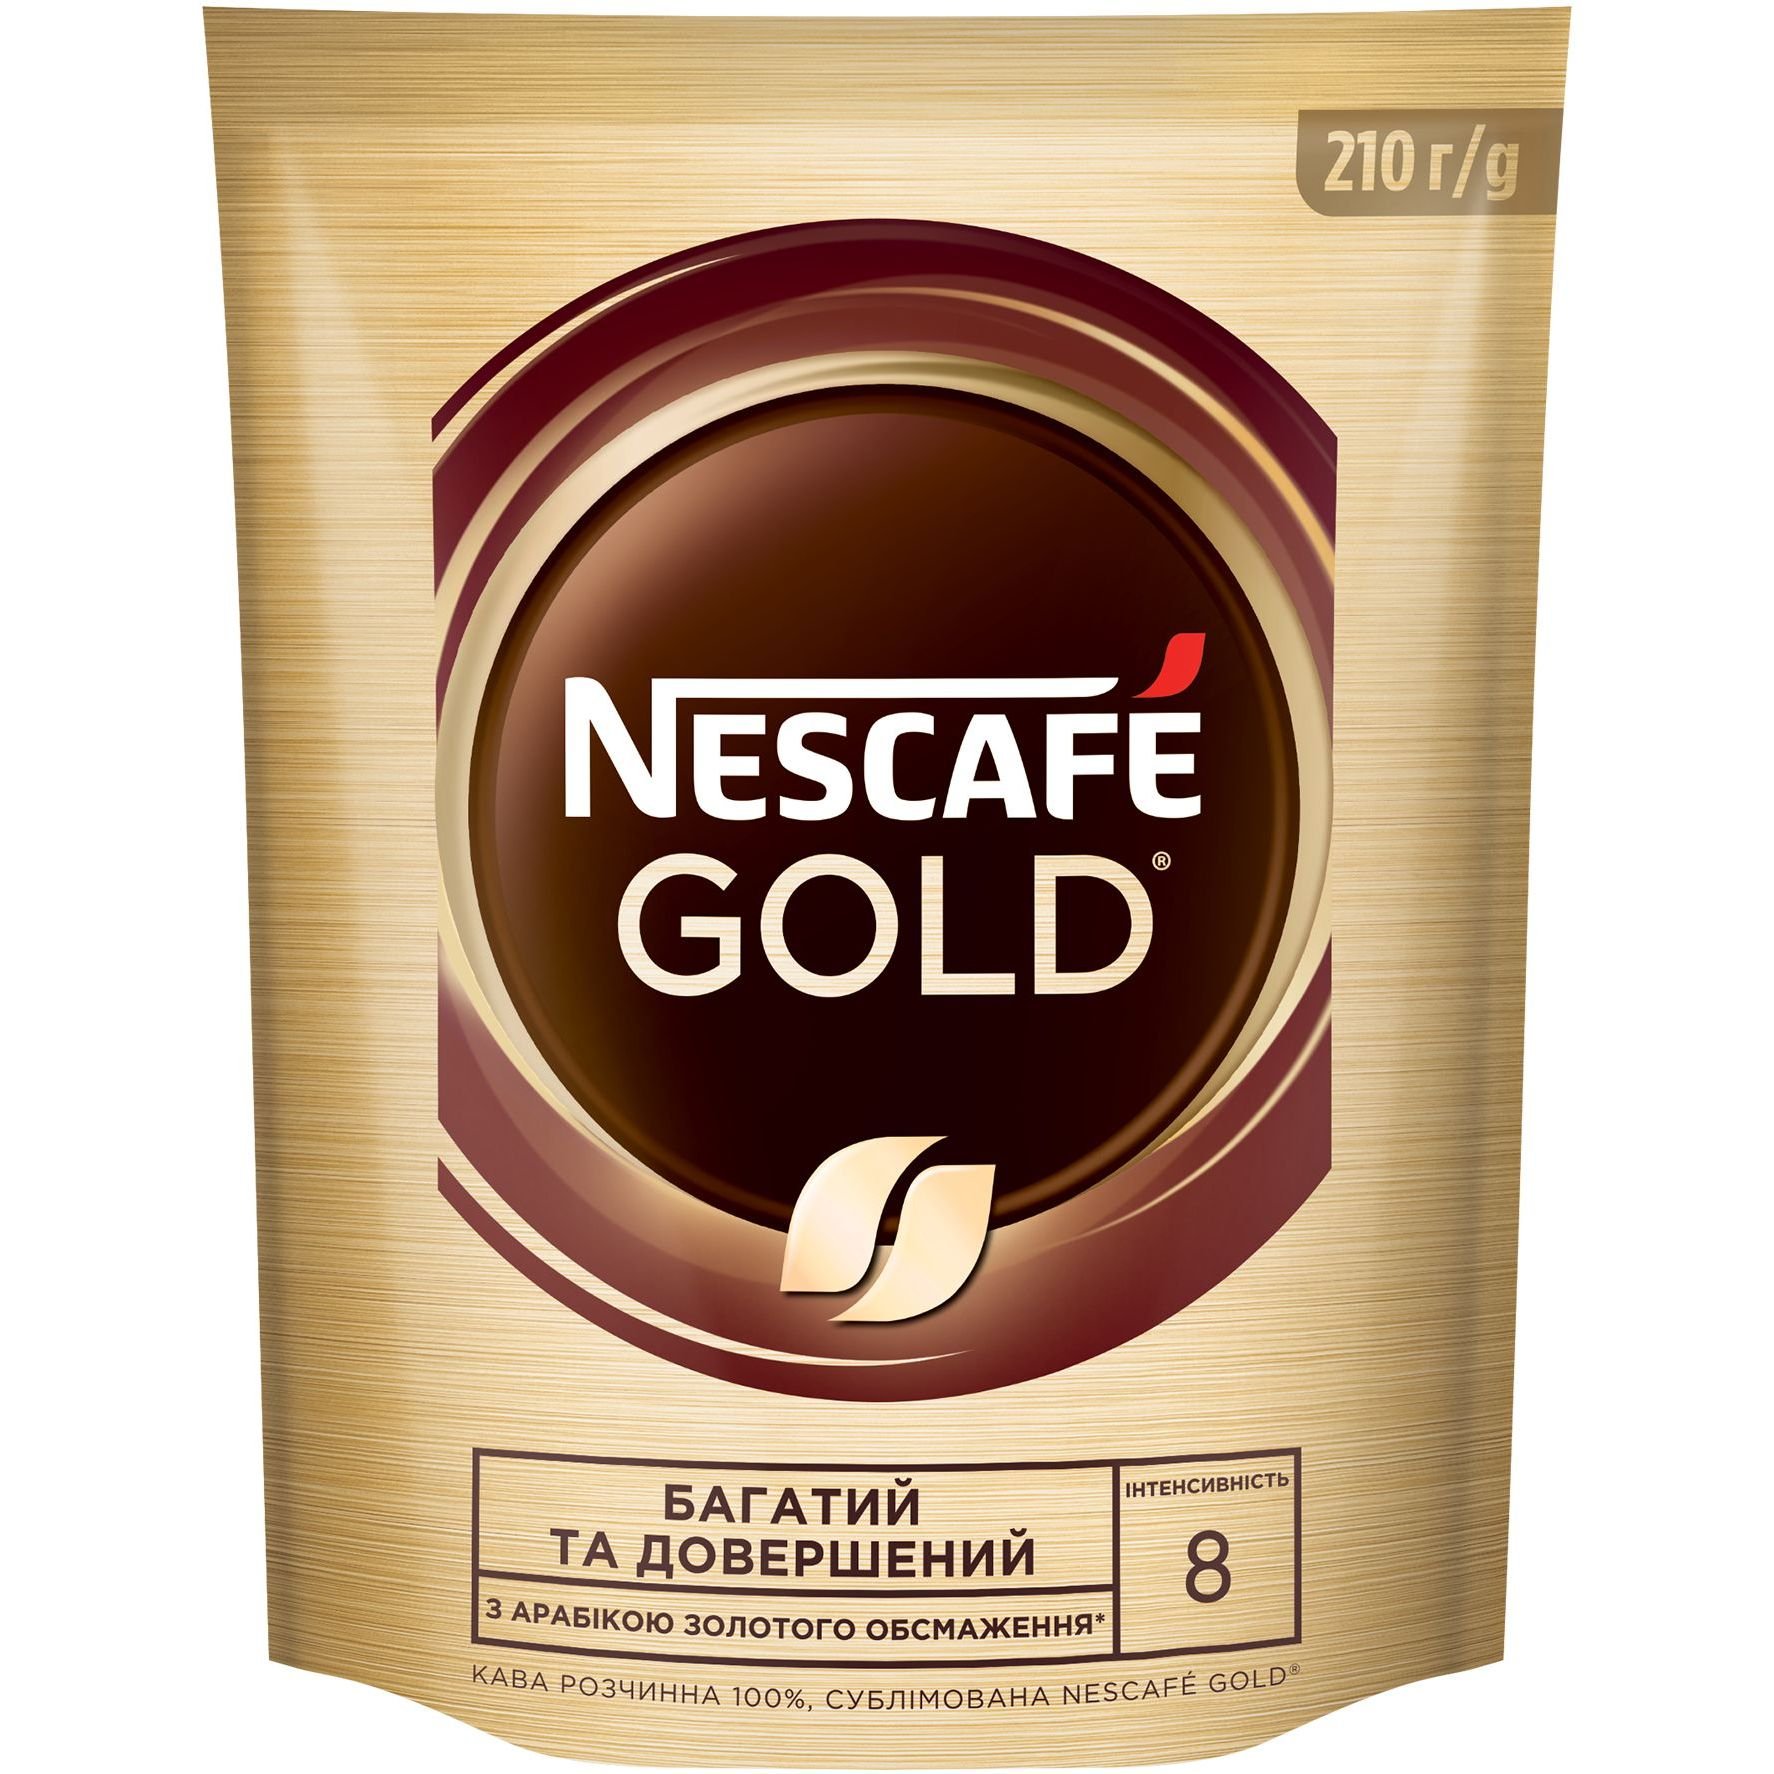 Кава розчинна Nescafe Gold 210 г - фото 1